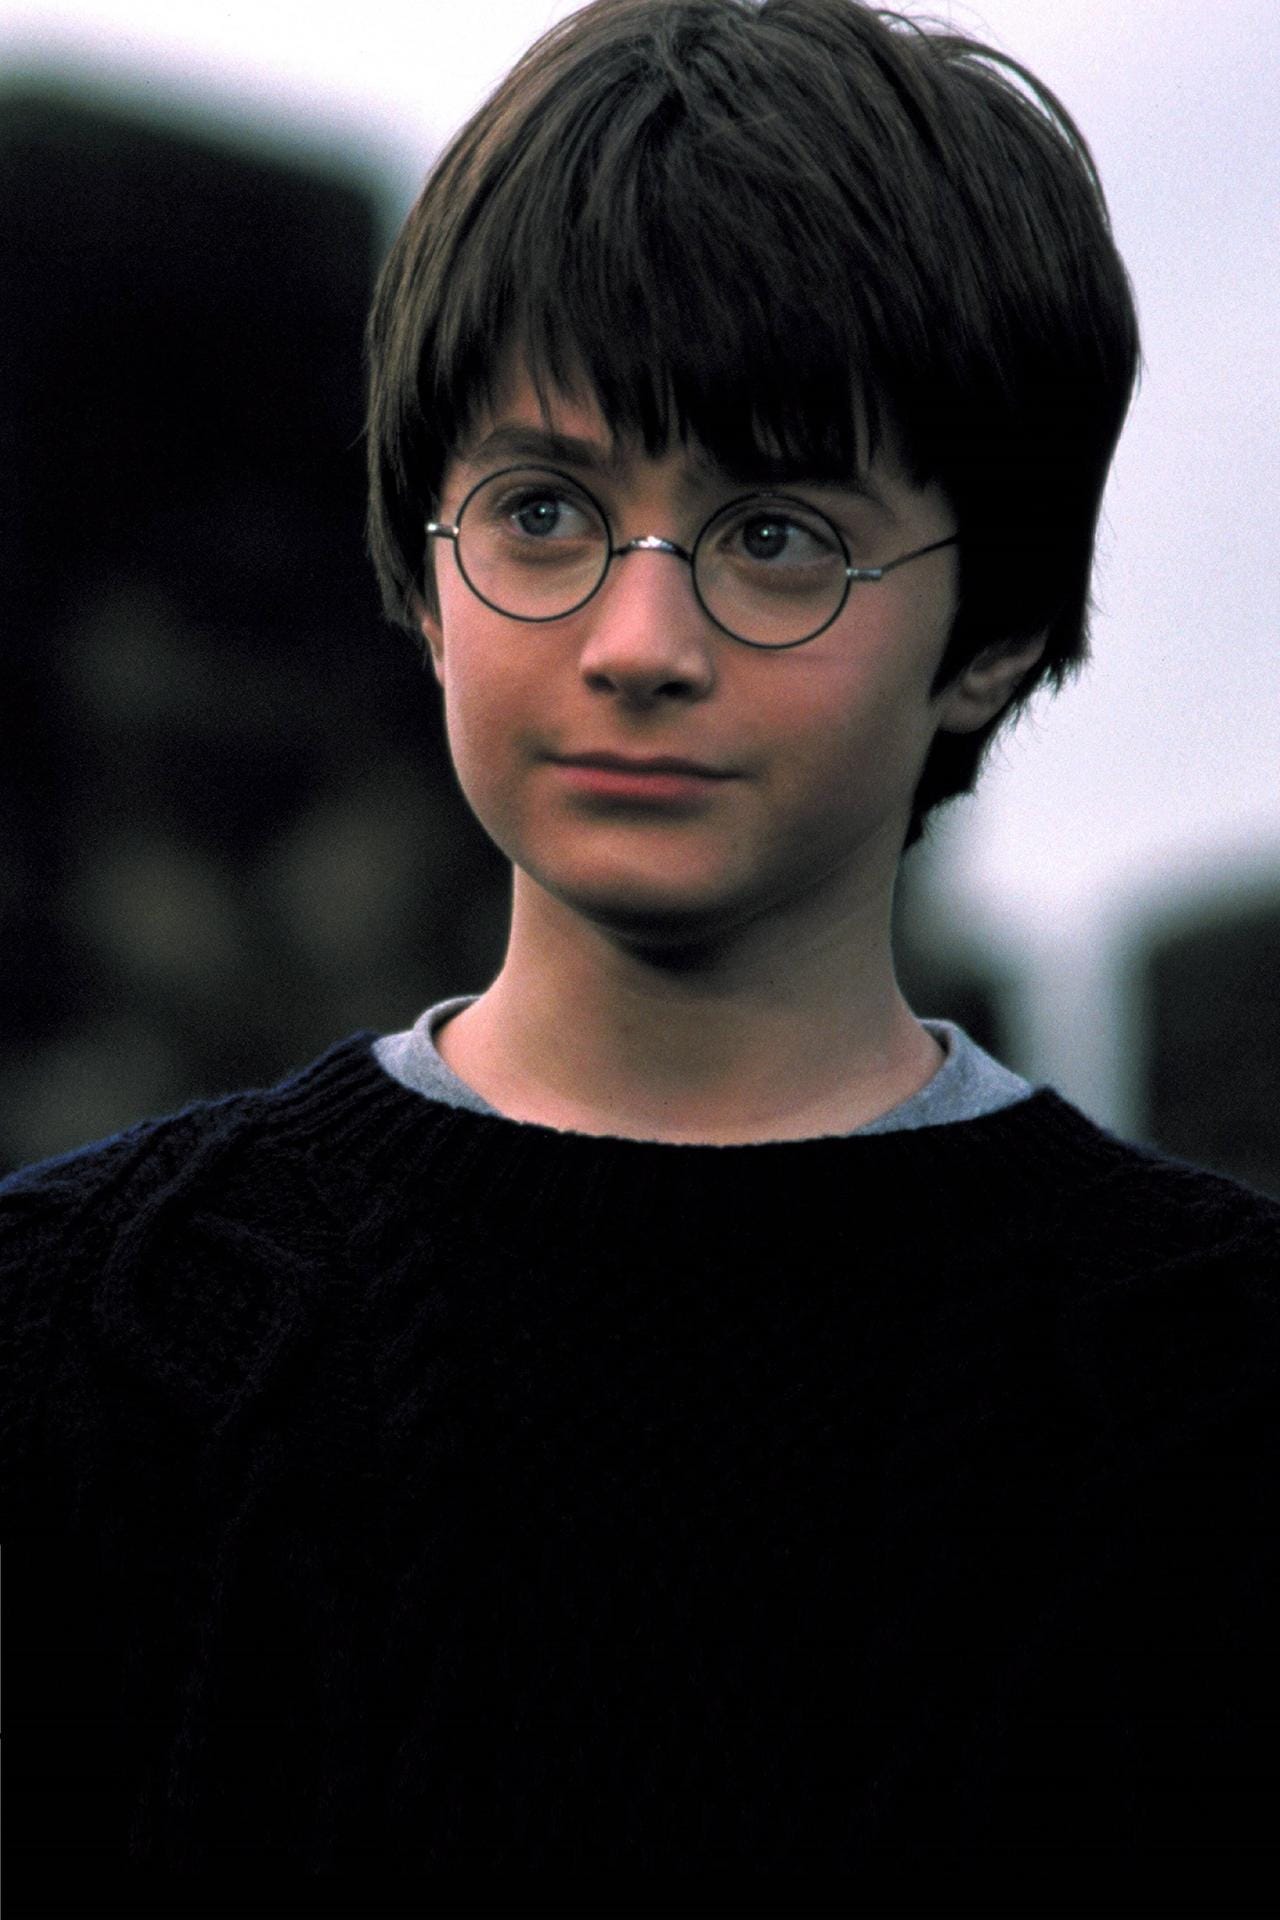 Daniel Radcliffe als Harry Potter: Als der erste Film in die Kinos kam, war er gerade einmal zwölf Jahre alt.